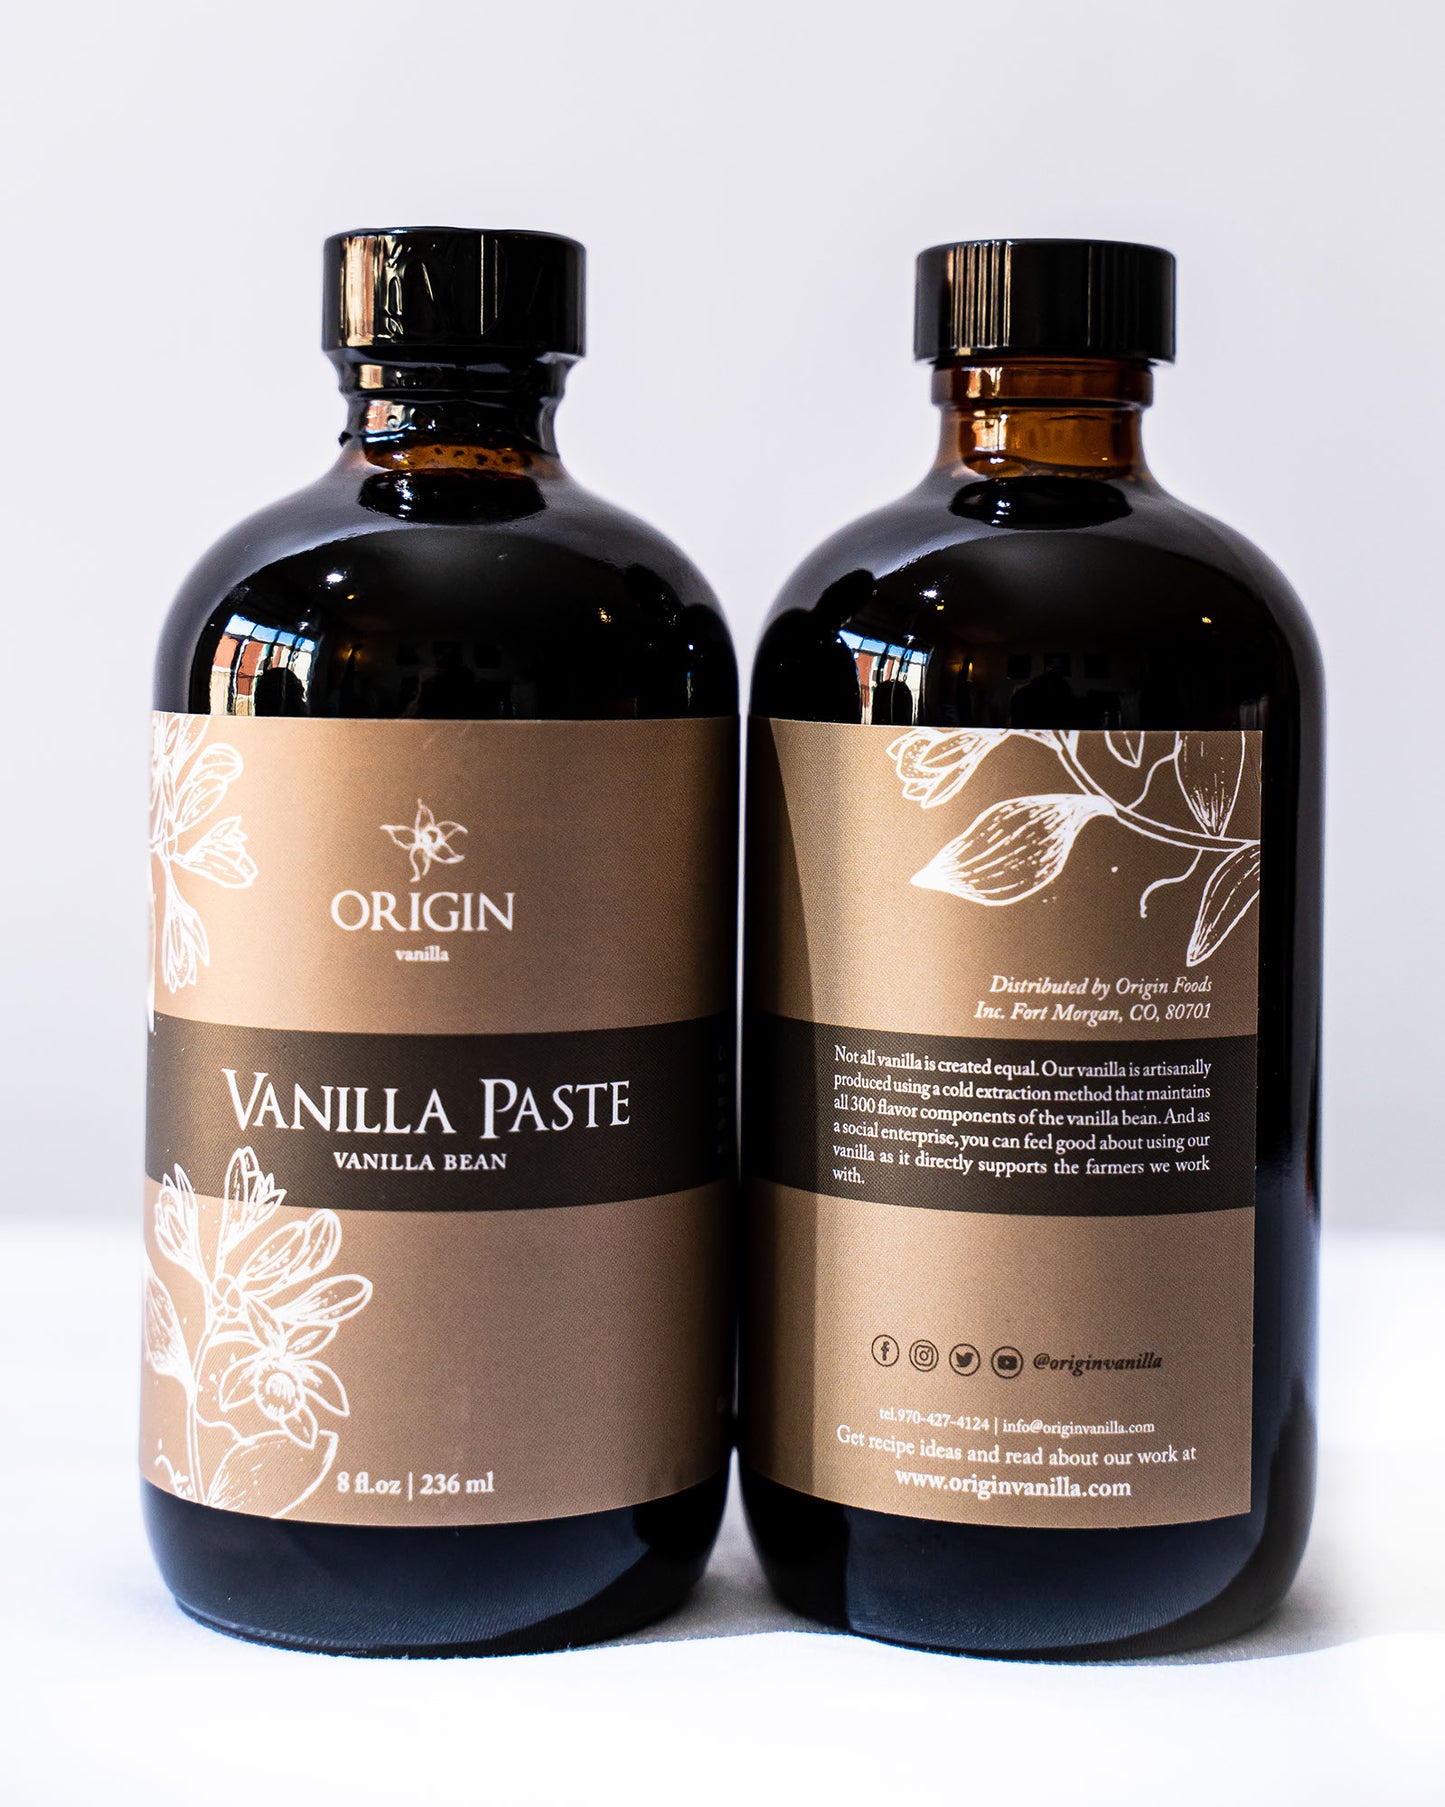 Vanilla Paste - Origin Vanilla